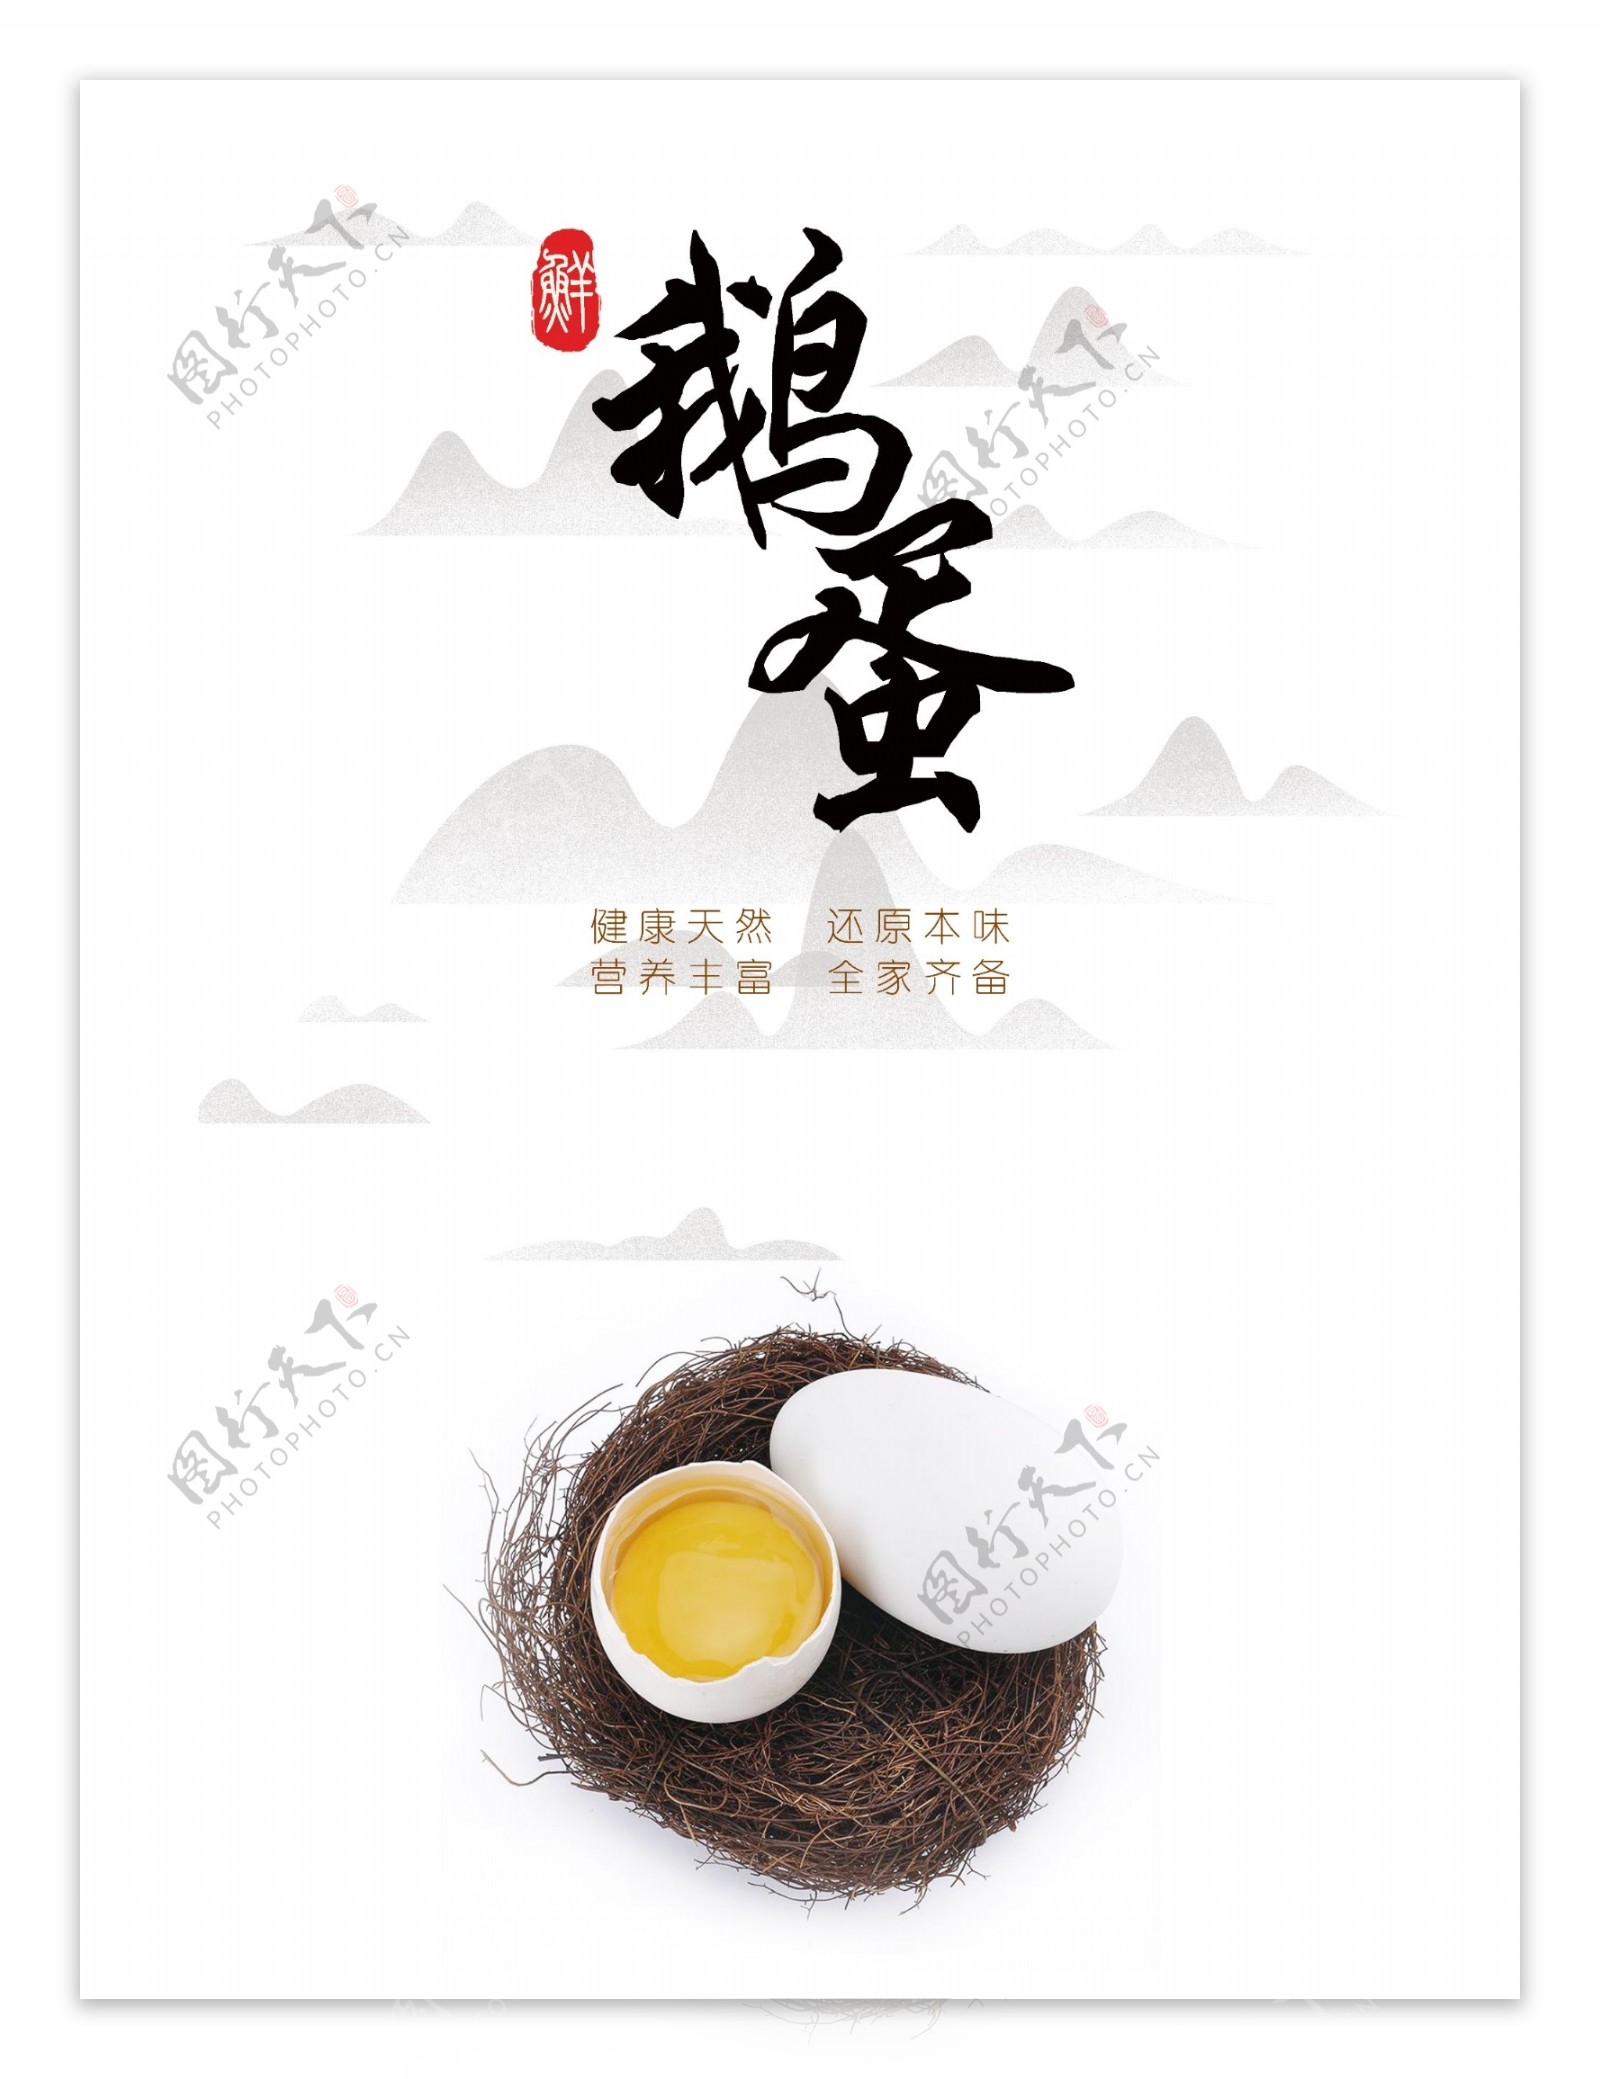 鹅蛋中国风宣传海报展板